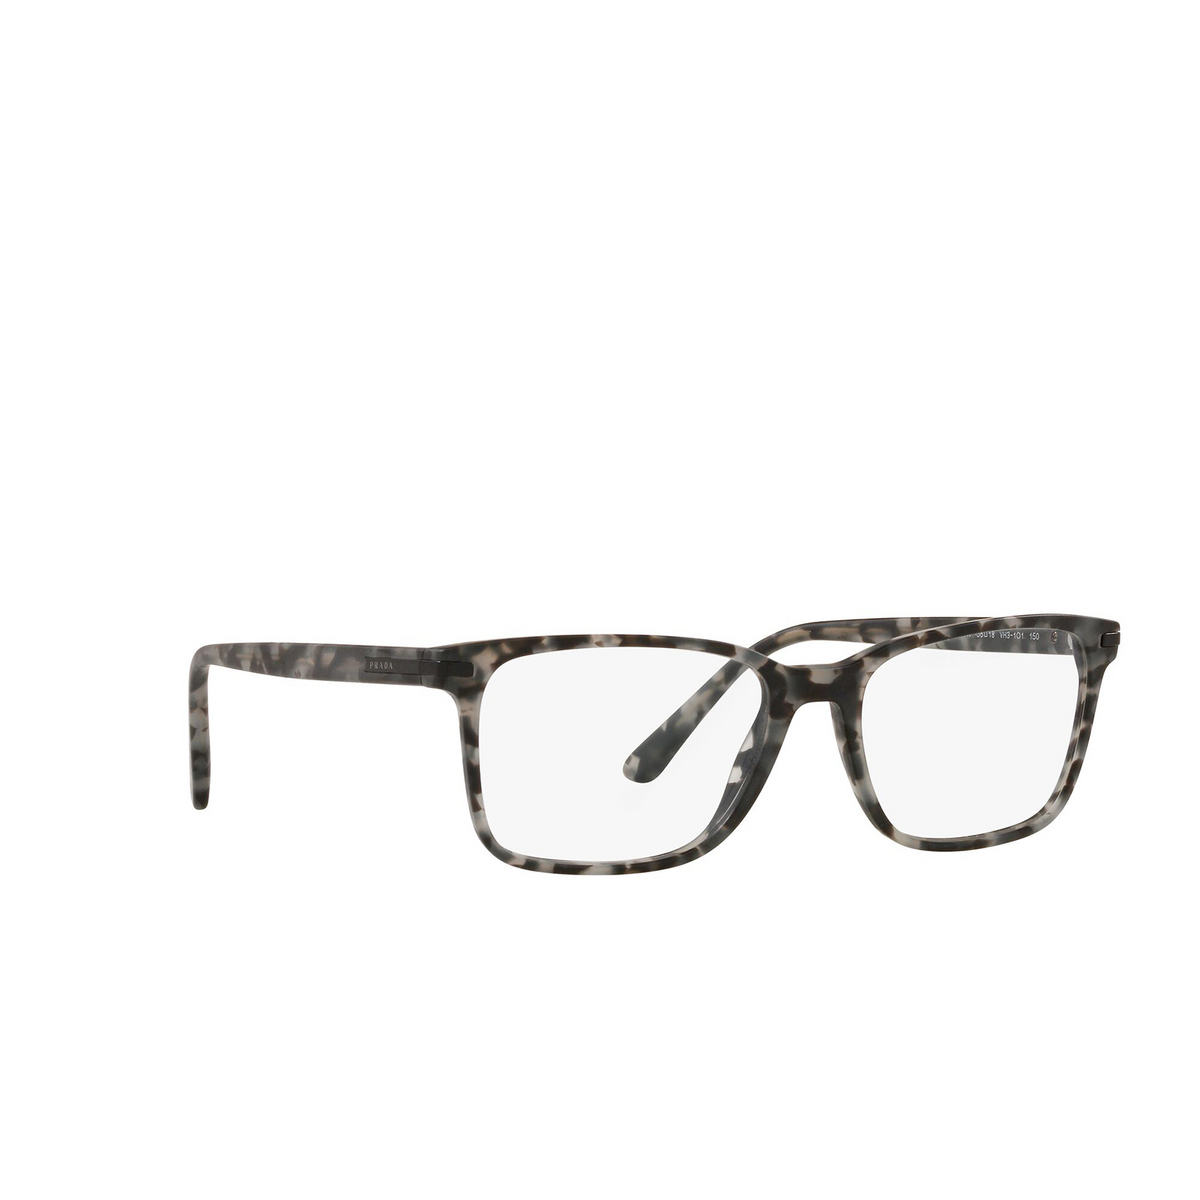 Prada® Square Eyeglasses: PR 14WV color Matte Grey Tortoise VH31O1 - three-quarters view.